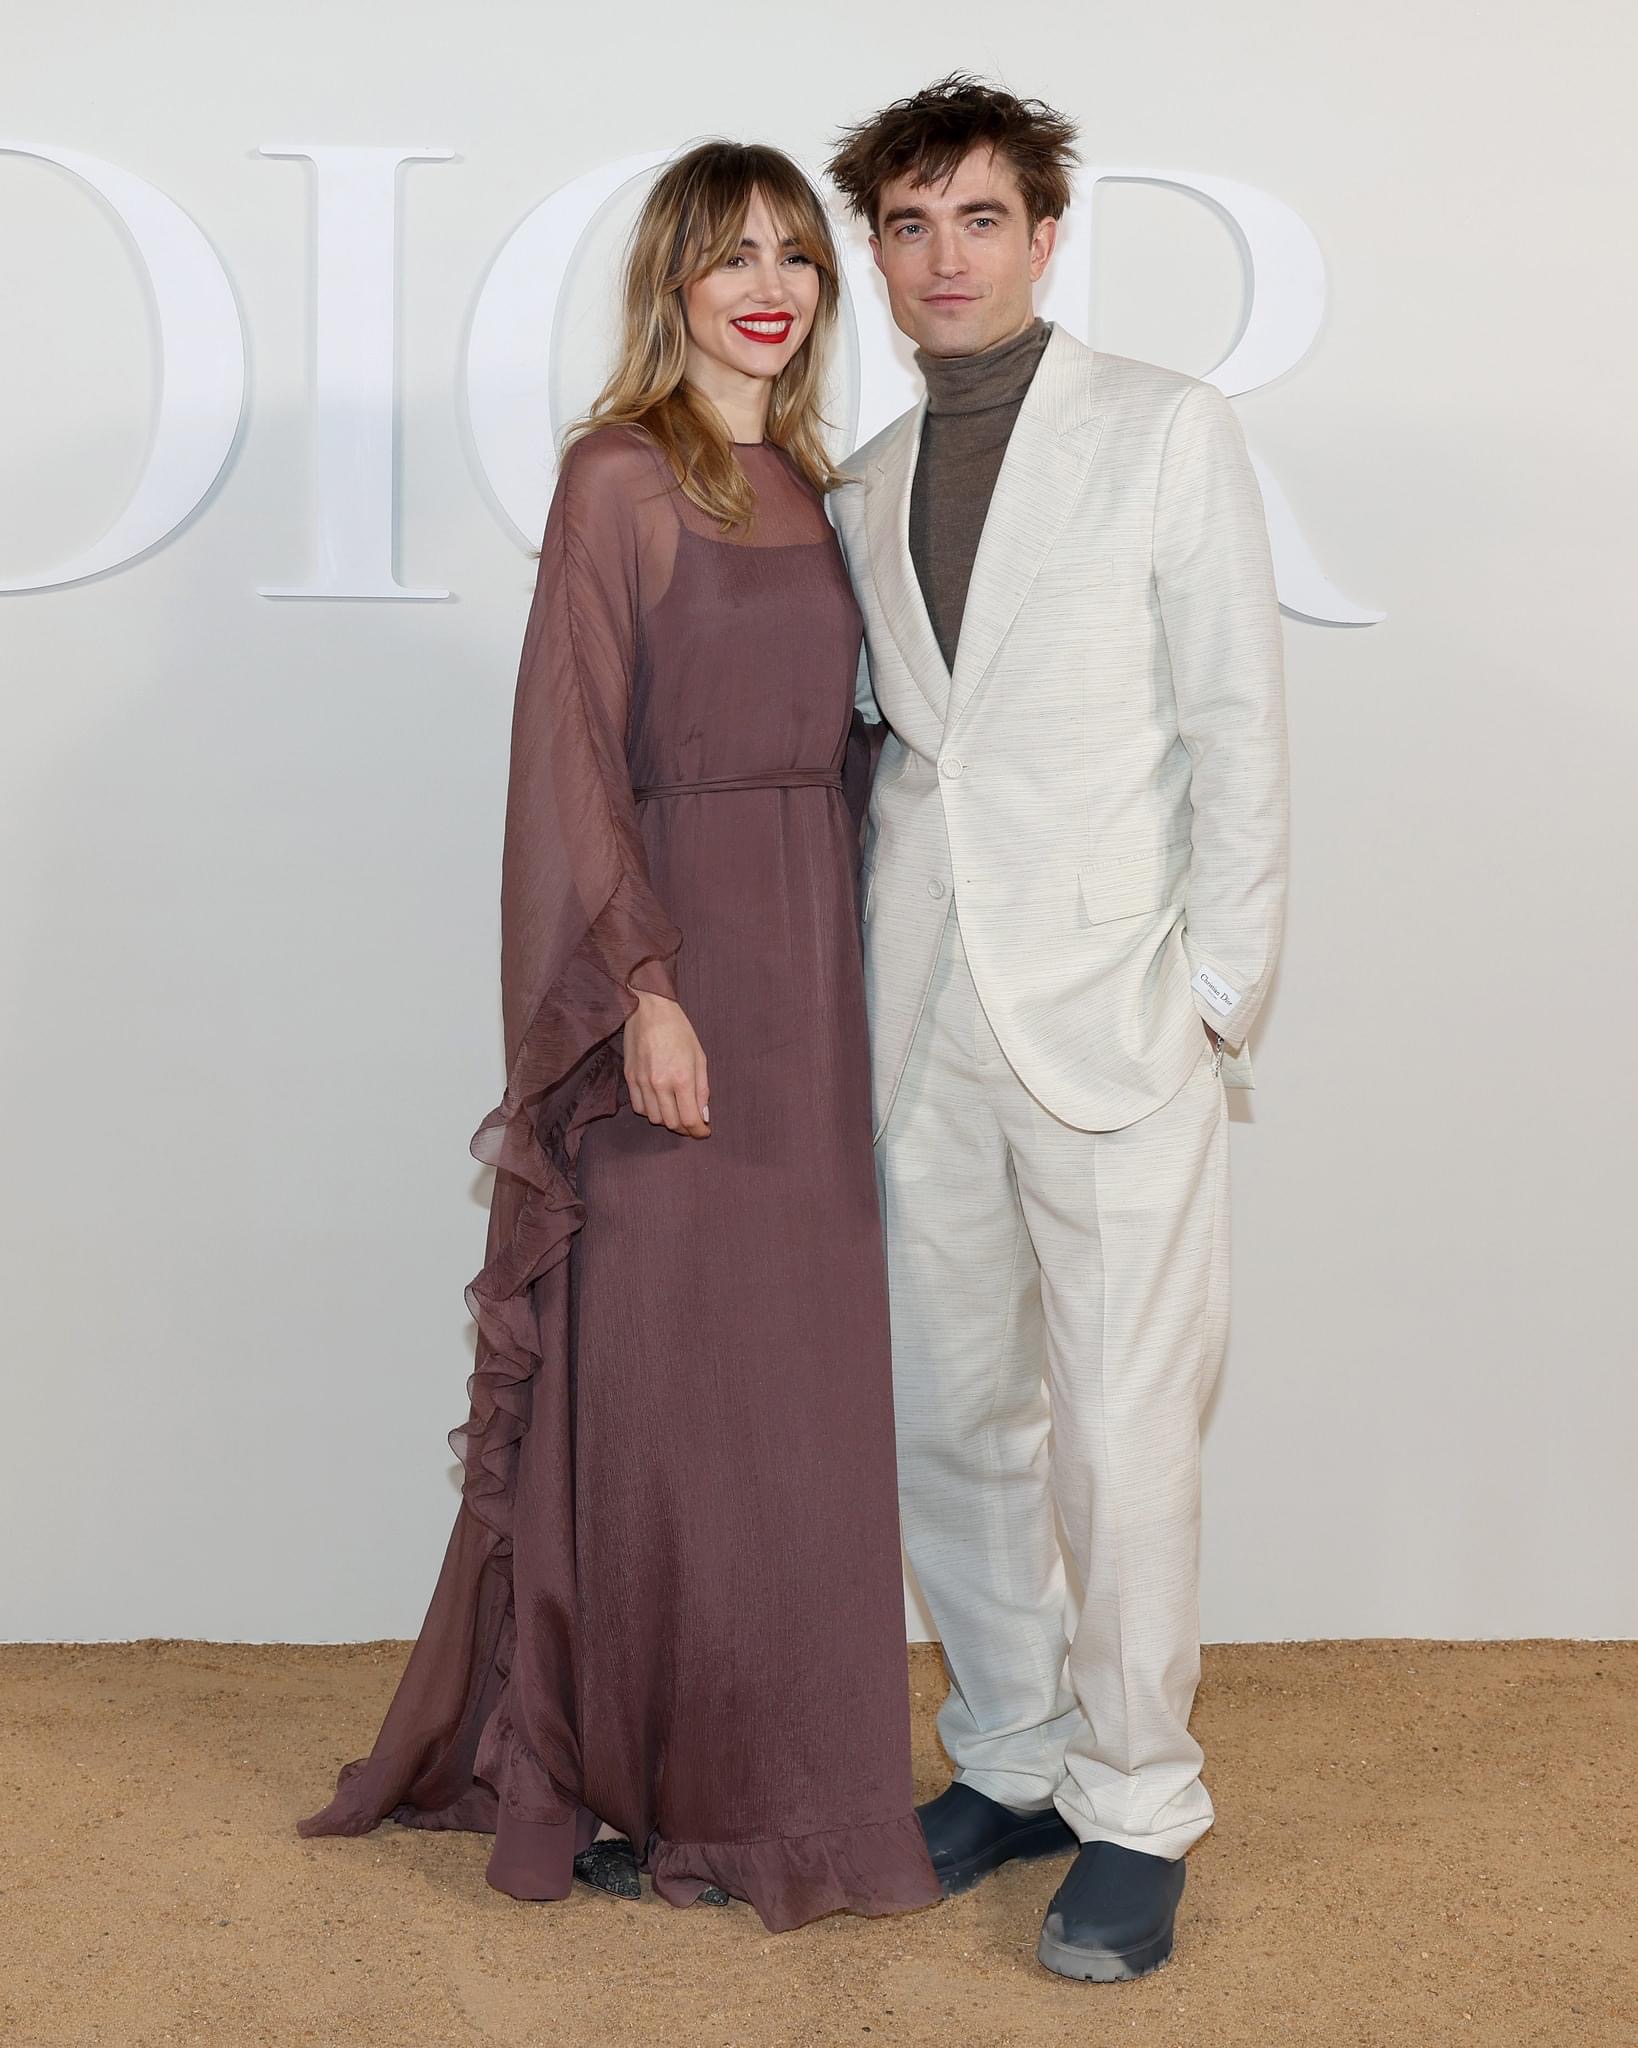 Ma cà rồng Robert Pattinson và bạn gái người mẫu lần đầu công khai lộ diện sau 4 năm yêu, visual cả đôi gây xôn xao - Ảnh 1.